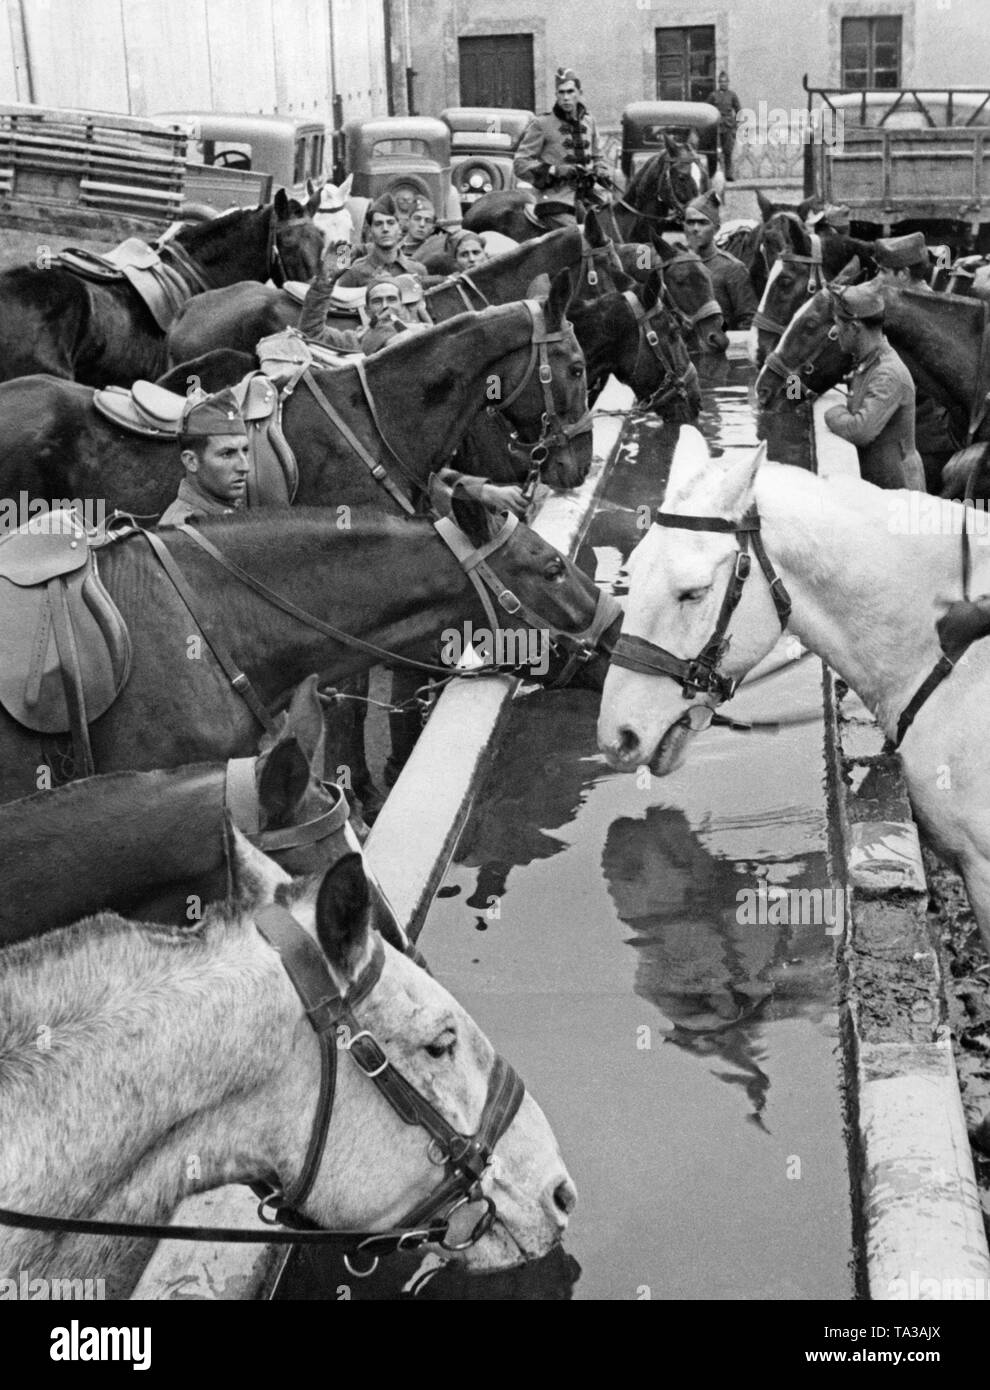 Foto von Trinkwasser Kavallerie Pferde mit Reiter an einer Wasserstelle bei der Ausbildung von Rekruten. Im Hintergrund, die kaserne Gebäude, sowie Autos und Lastwagen. Der Kursleiter (zu Pferd im Dress Uniform) beobachtet die Szene. Stockfoto